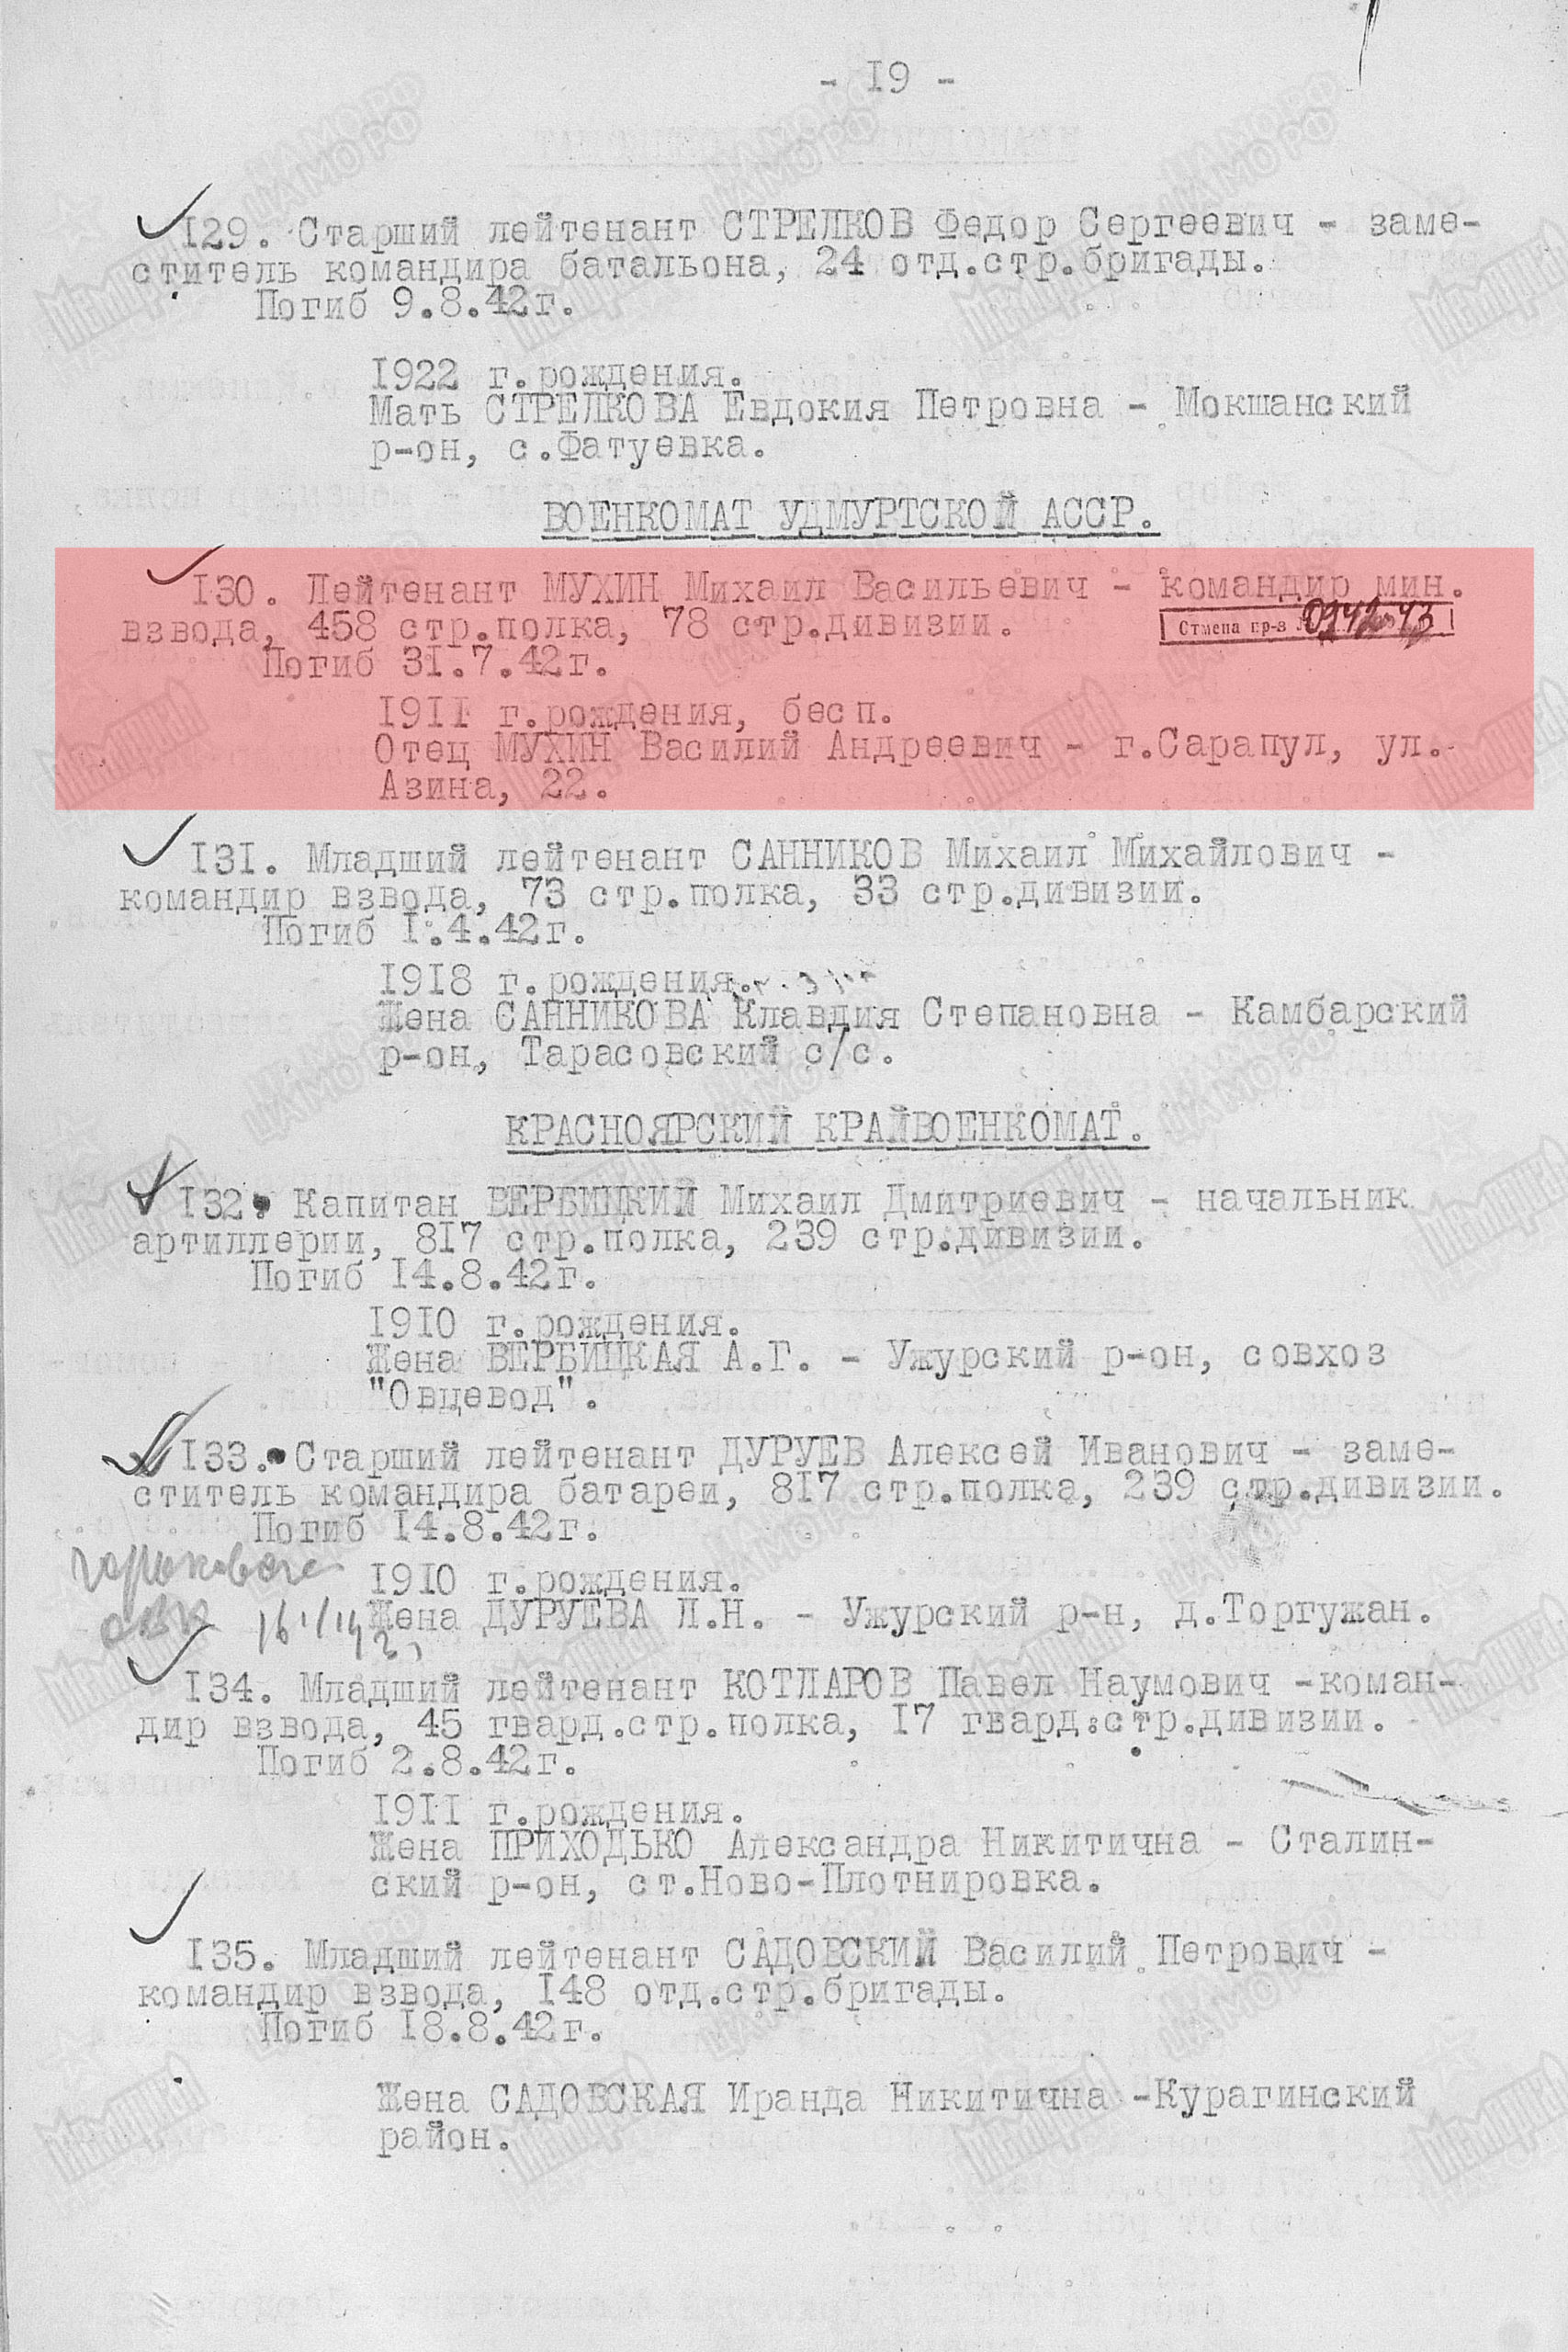 Лист приказа об исключении из списков Красной Армии